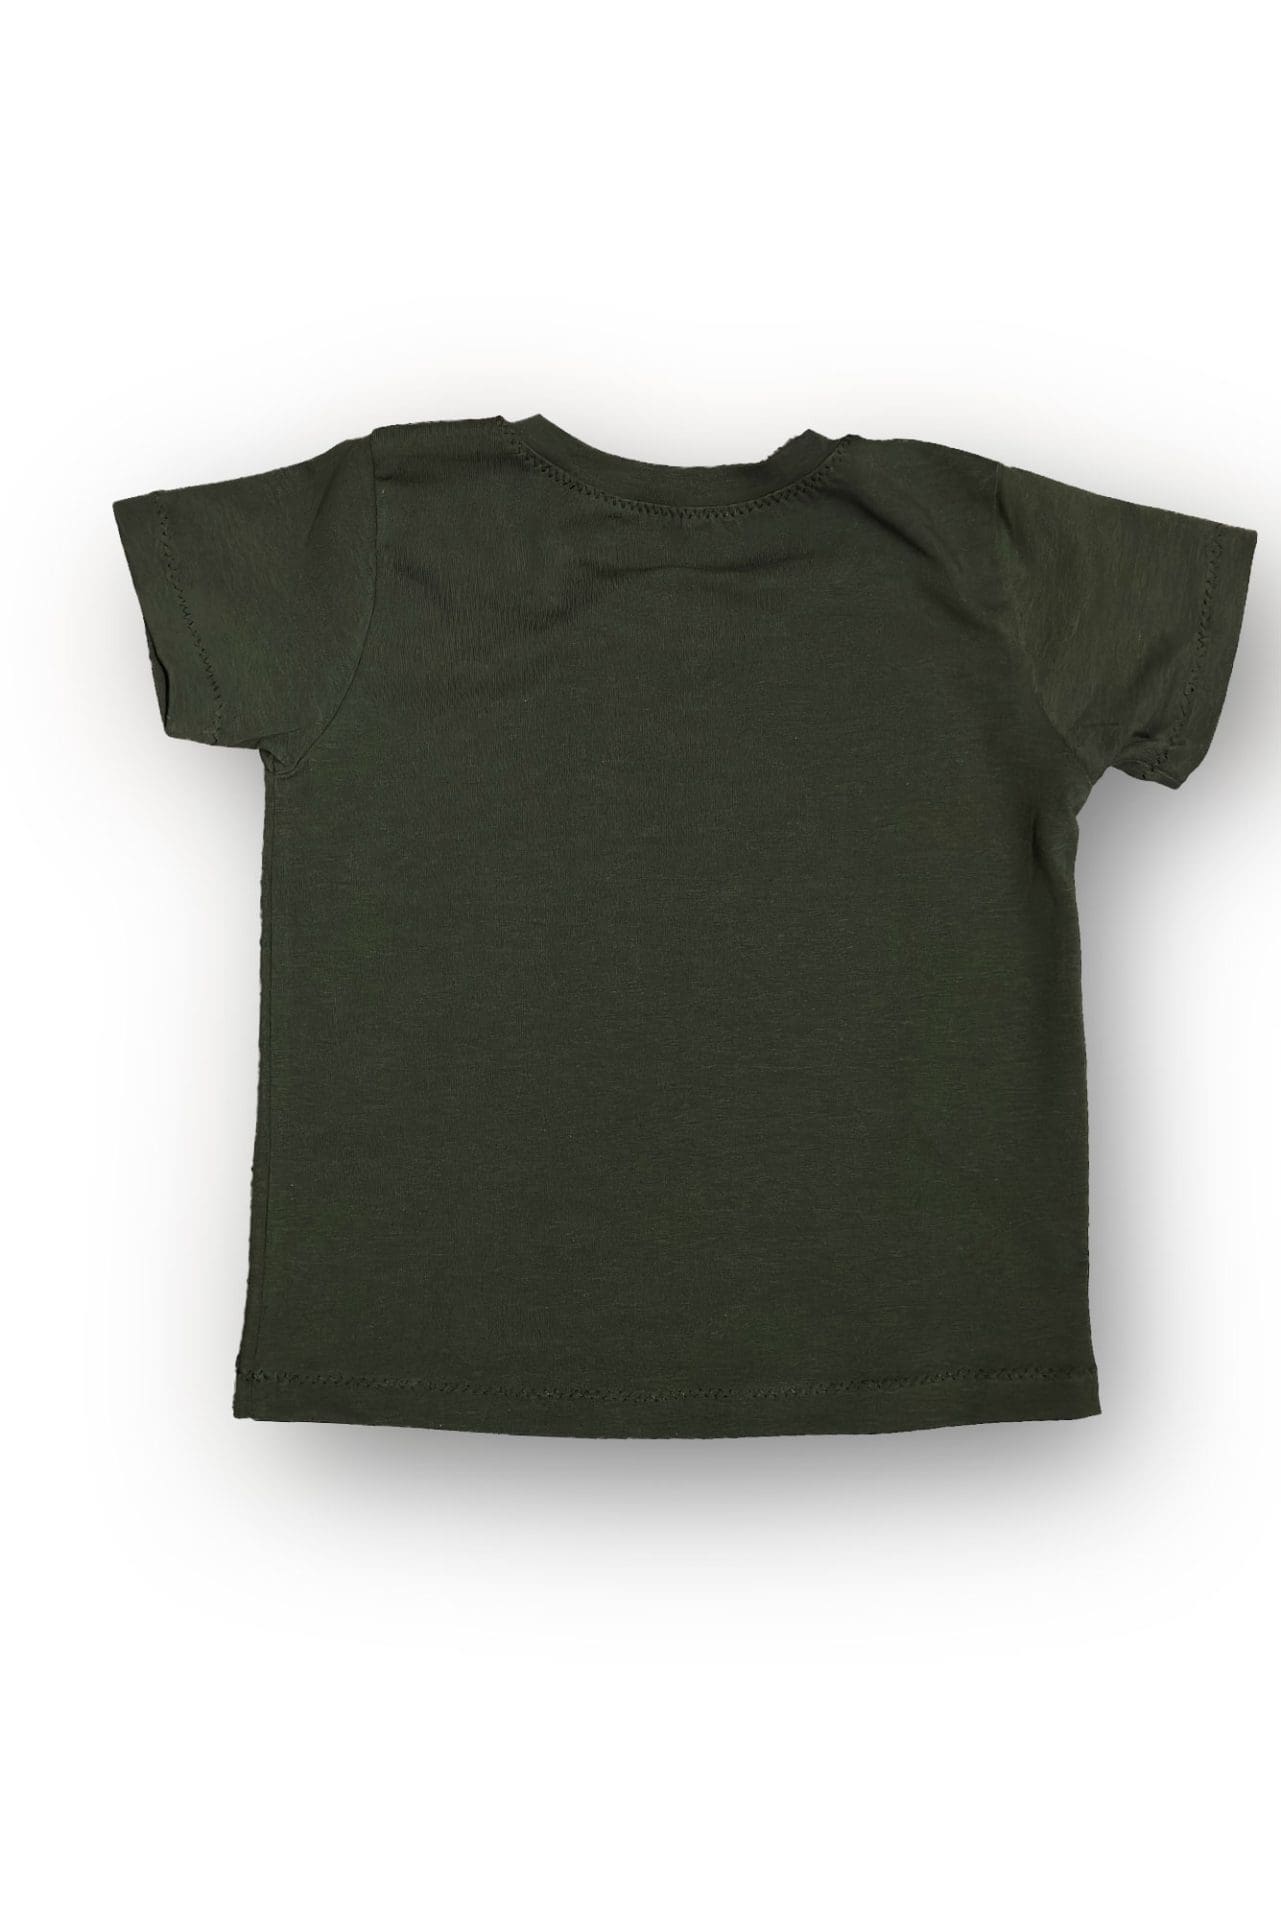 100% памук тъмно зелена тениска със светеща щампа за деца